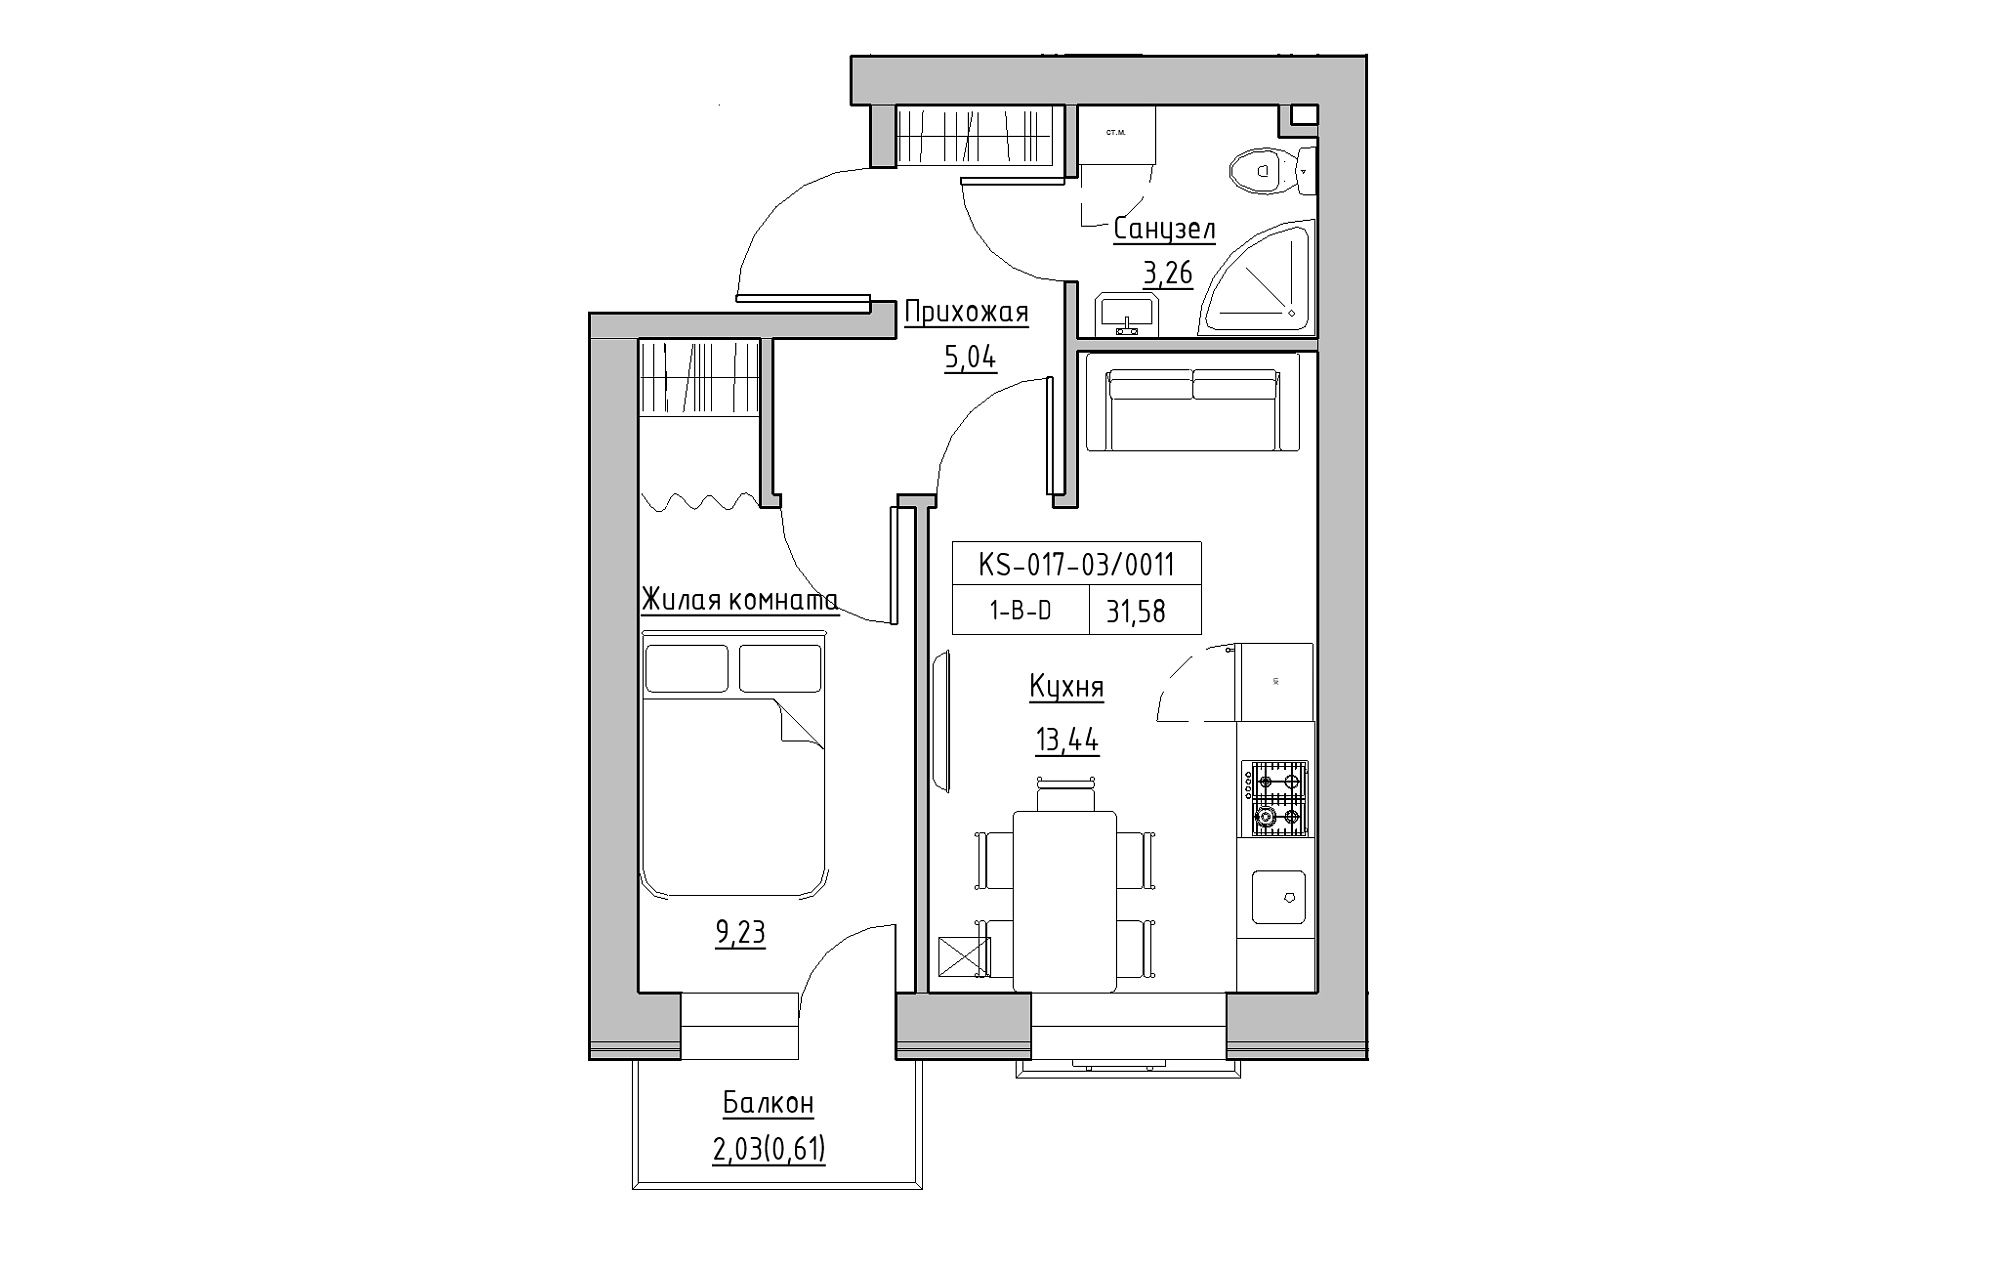 Планировка 1-к квартира площей 31.58м2, KS-017-03/0011.